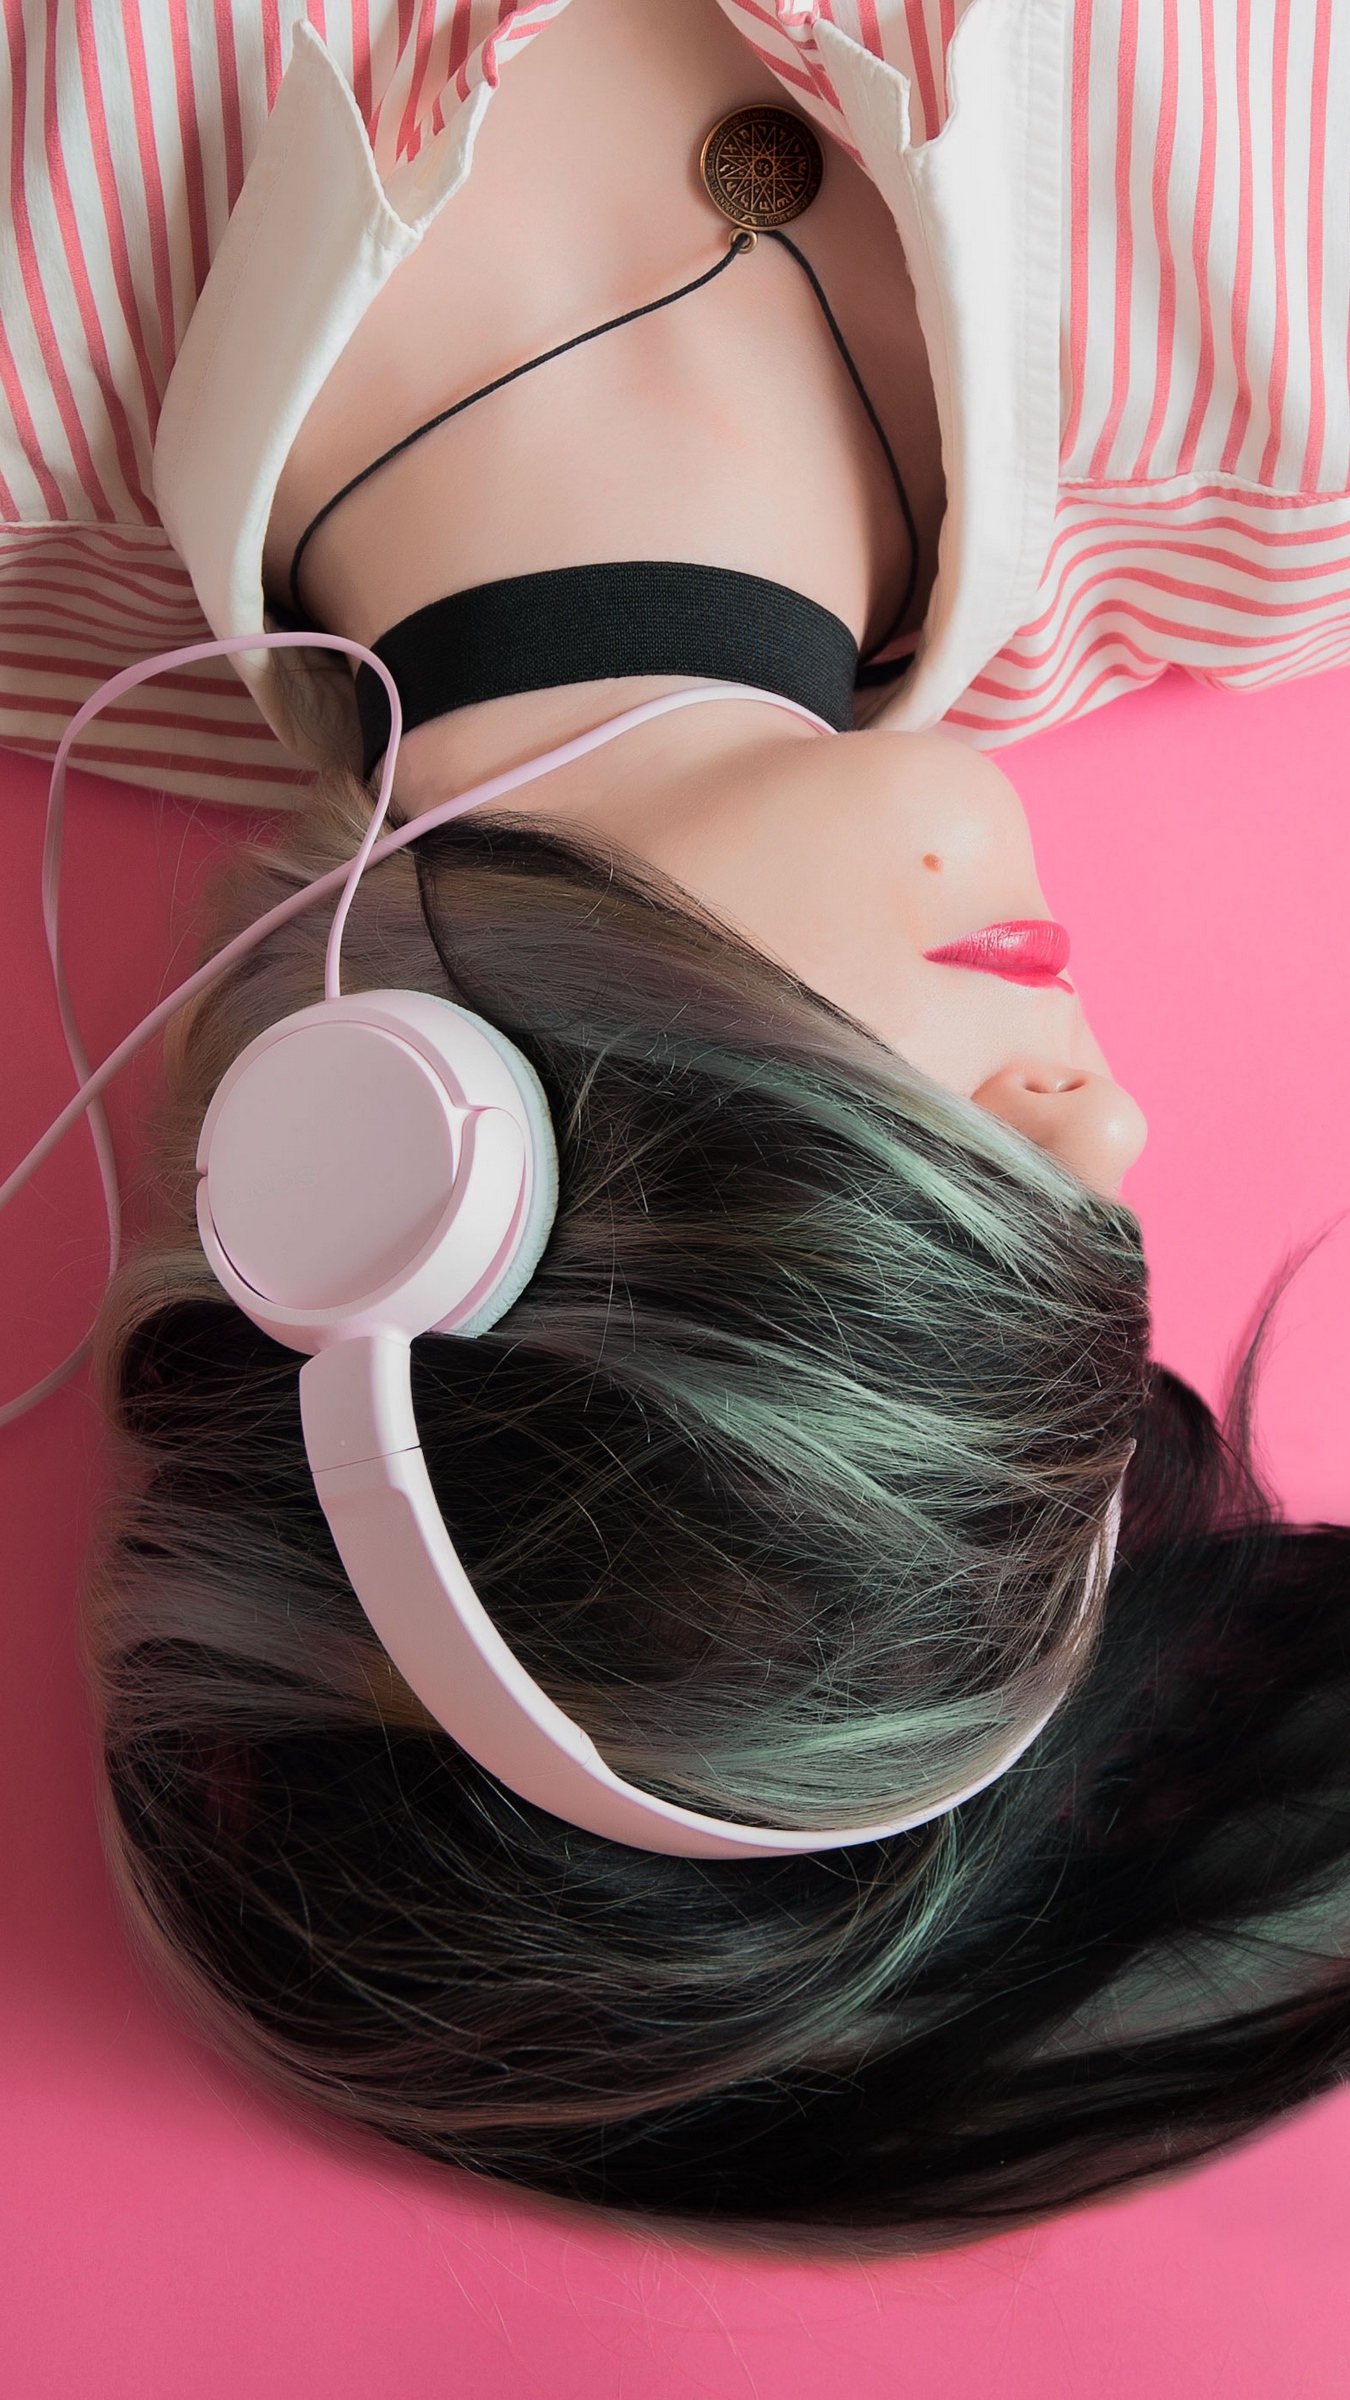 Download wallpaper 1350x2400 headphones, girl, music lover